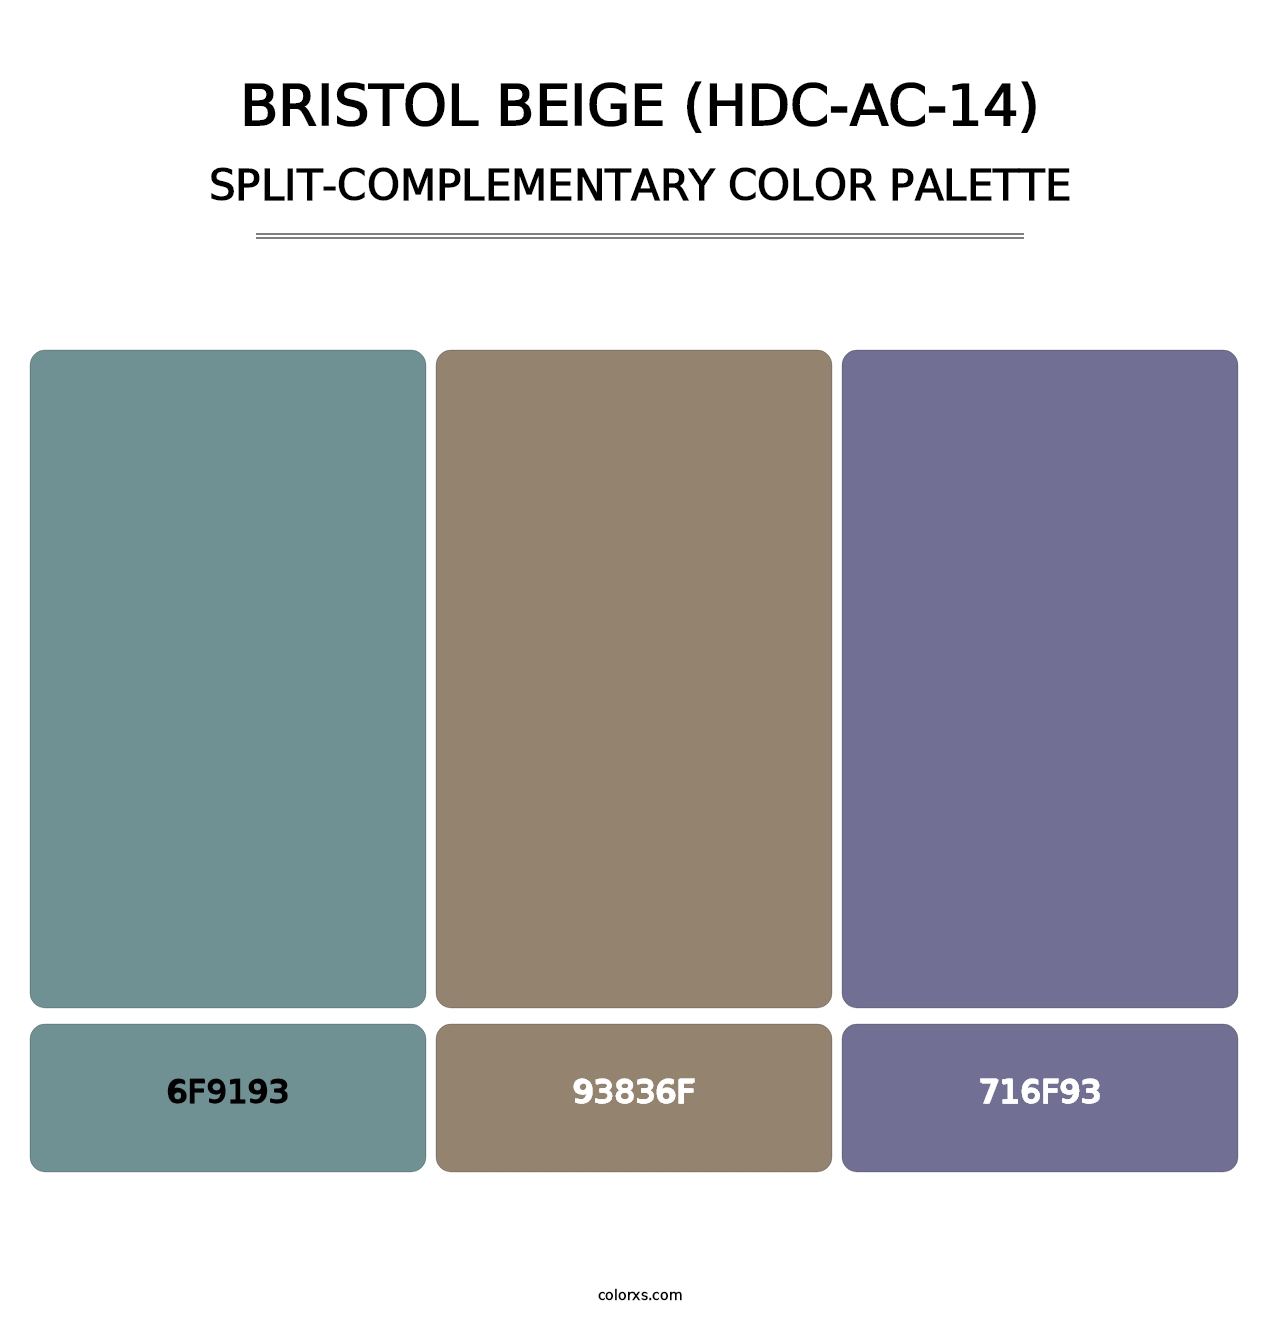 Bristol Beige (HDC-AC-14) - Split-Complementary Color Palette